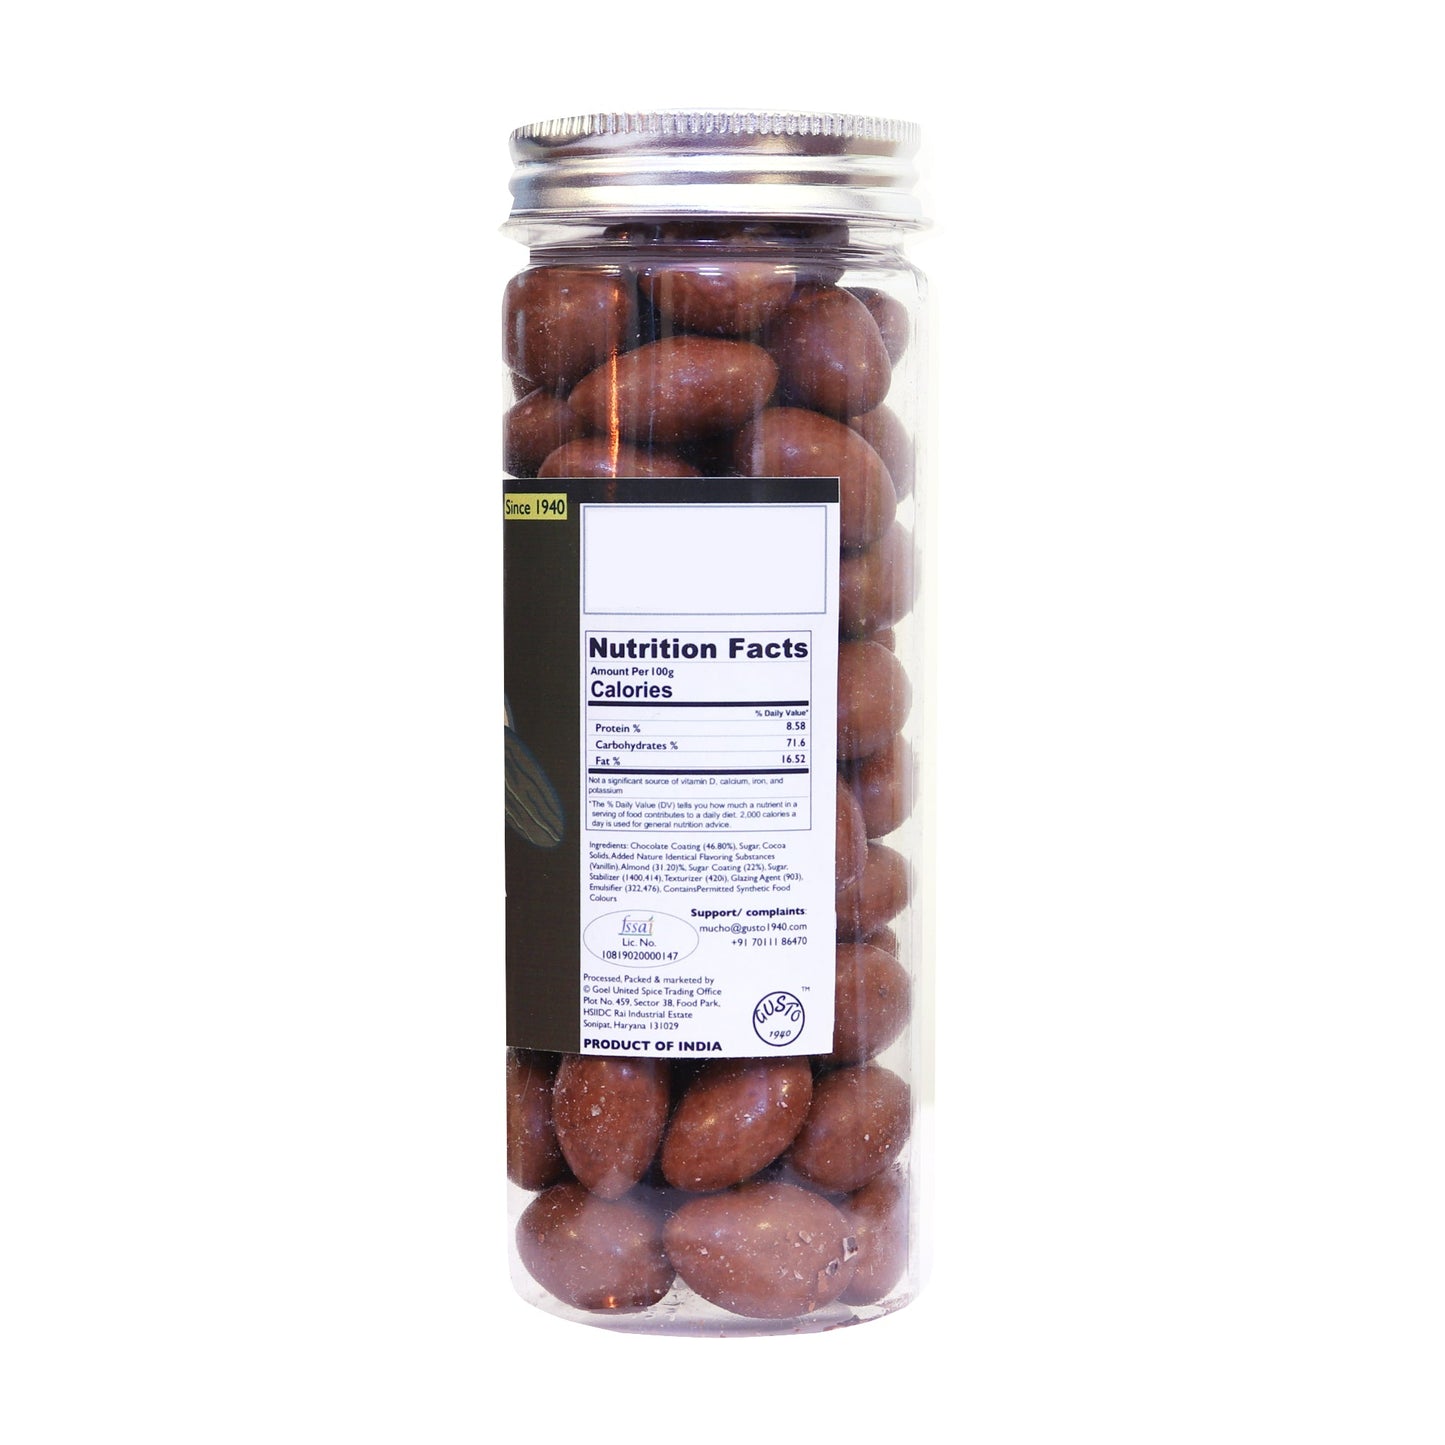 Chocolate Coated Almonds 200g - Tassyam Organics